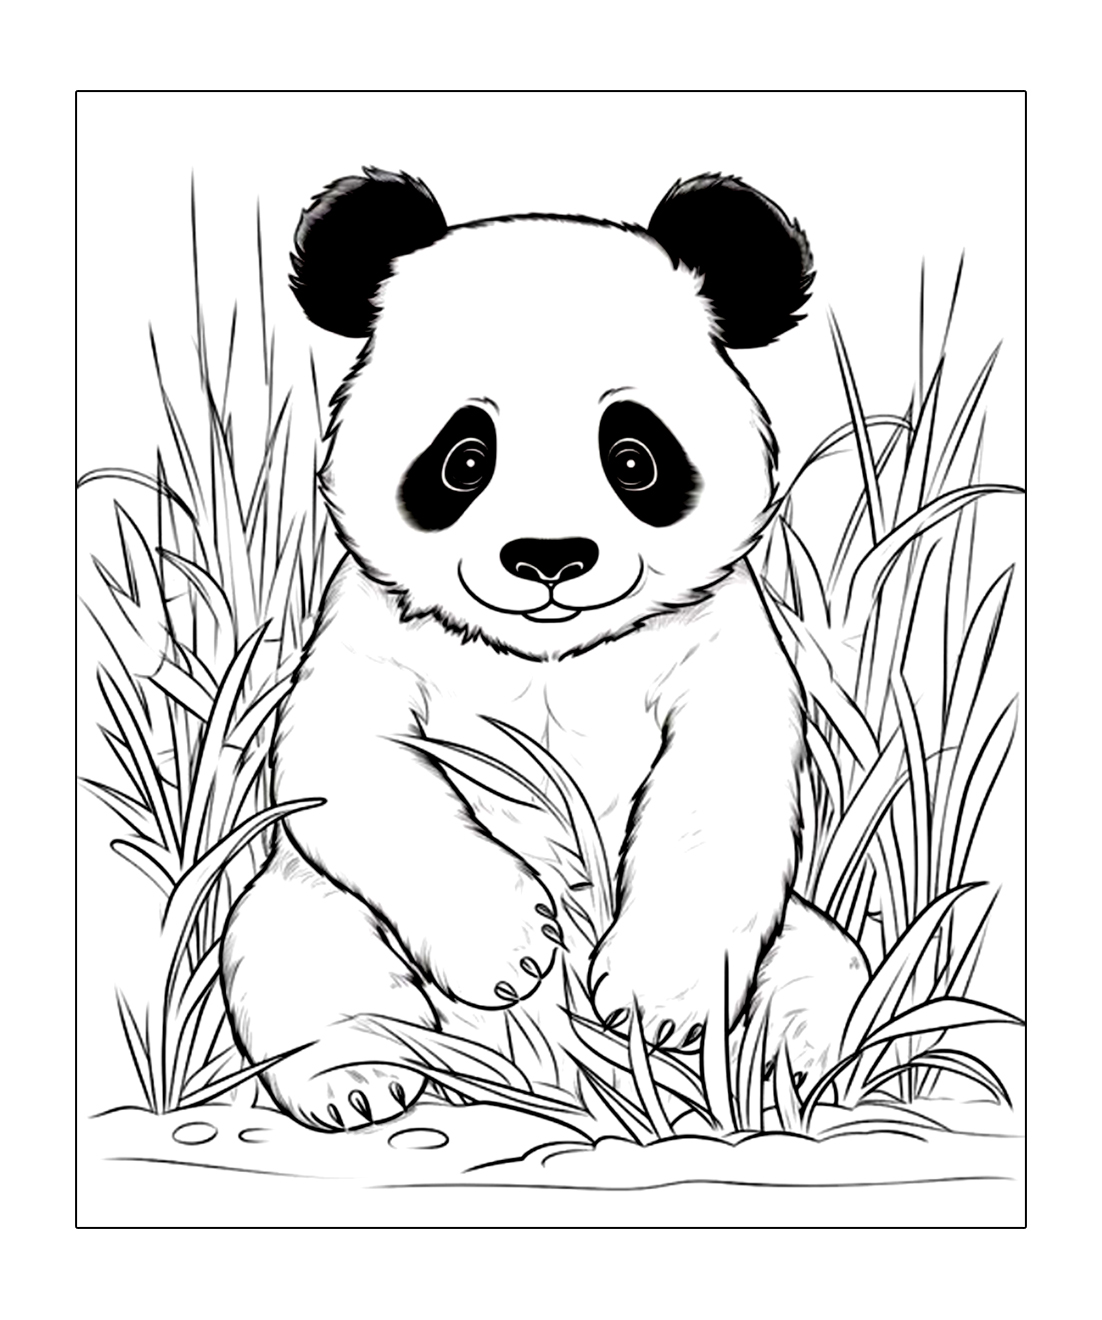 Panda sieht dich an und lächelt